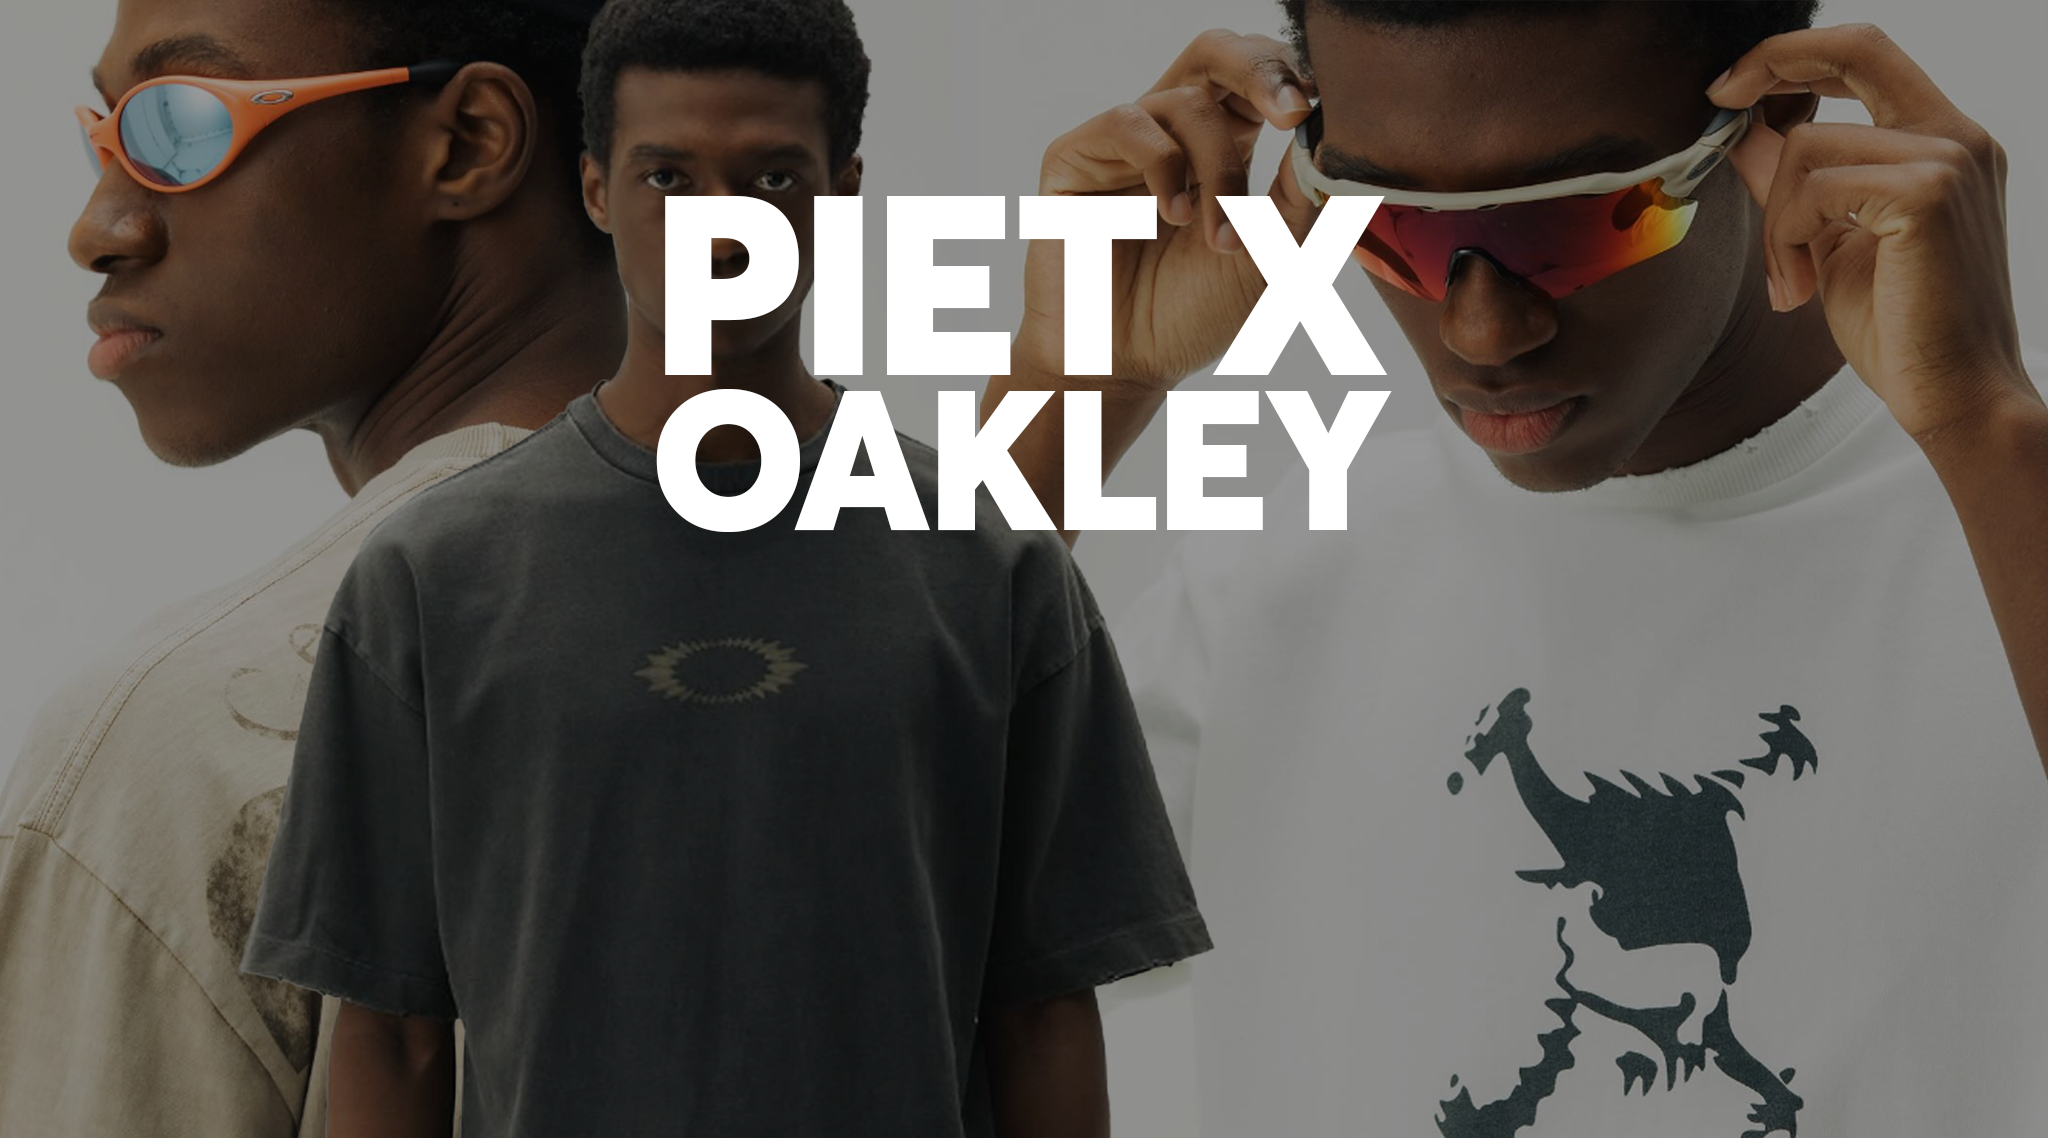 Oakley Metal Tee PIET x Oakley - Black